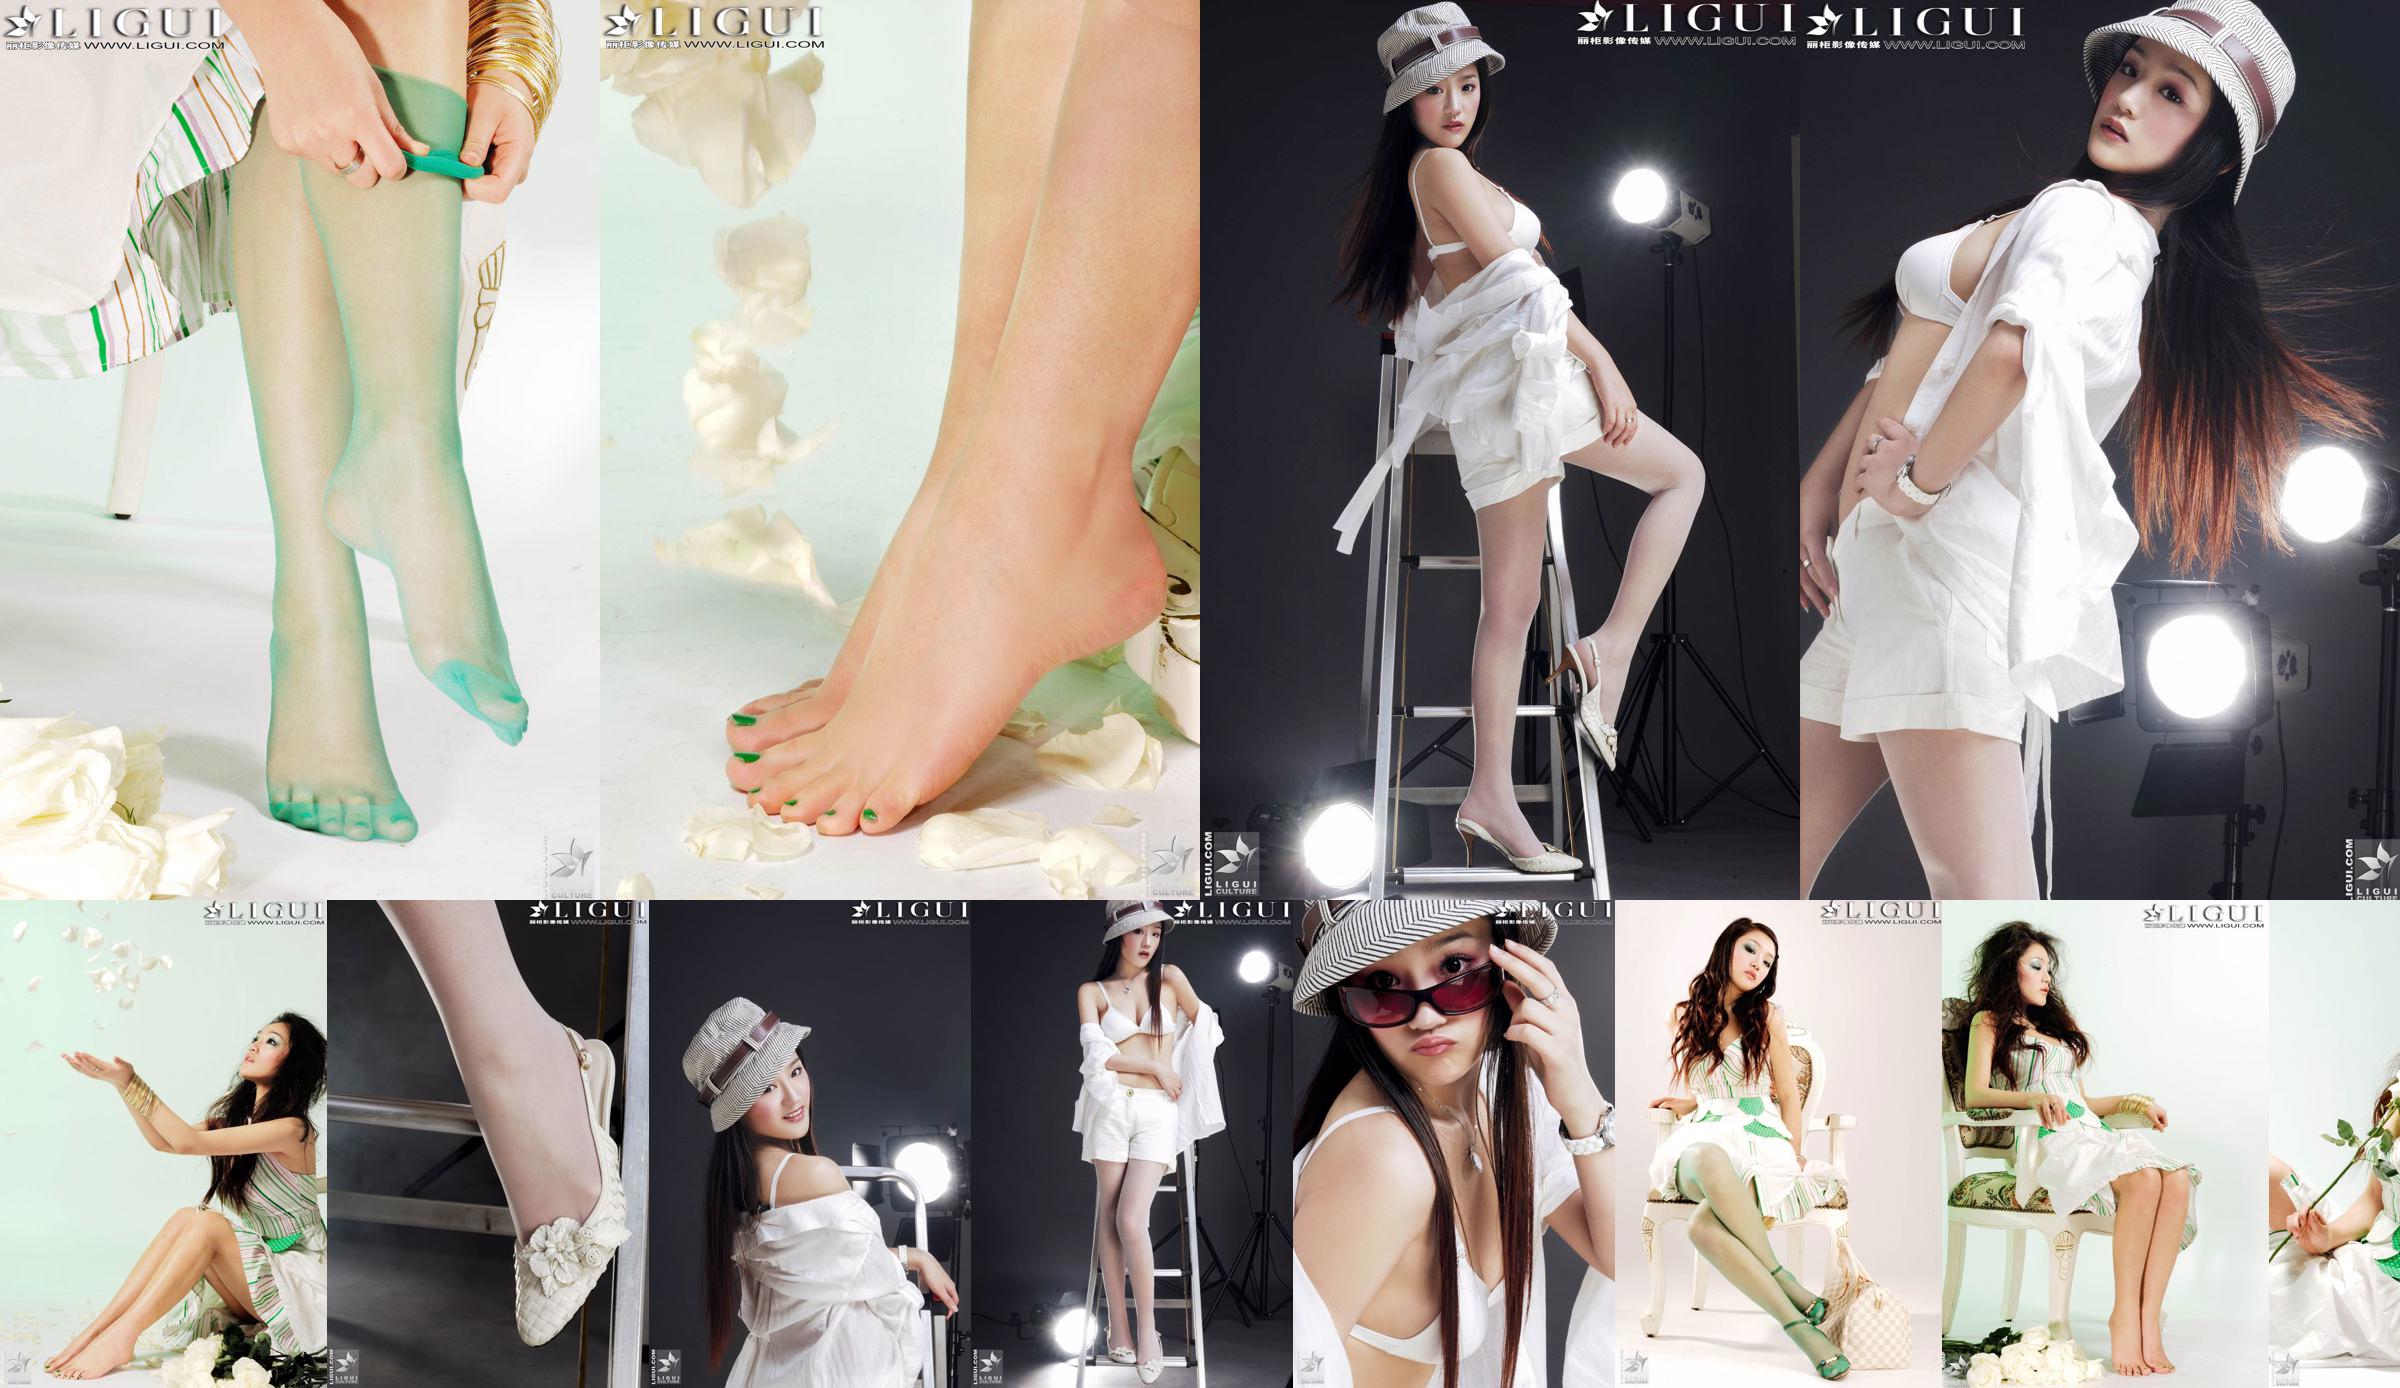 [丽 柜 贵 stopa LiGui] Zdjęcie "Modnej stopy" modelki Zhanga Jingyana przedstawiające piękne nogi i jedwabne stopy No.d5b918 Strona 9